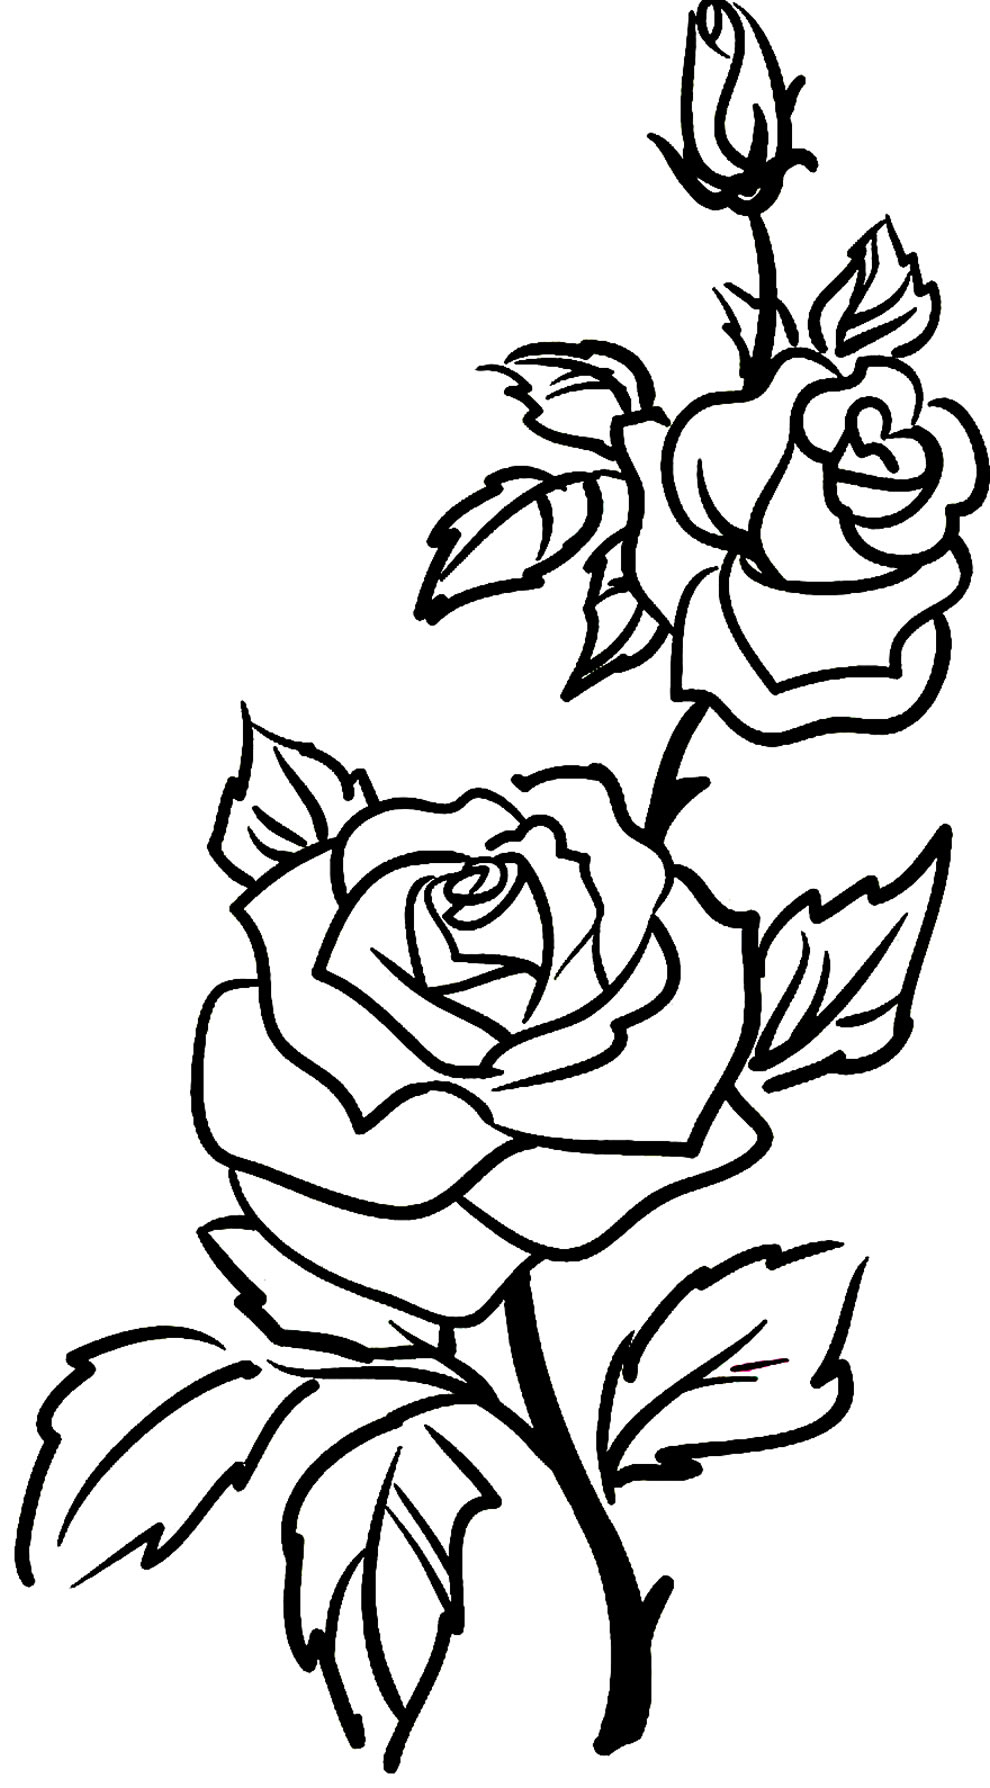 Desenhos De Rosa Para Colorir Dicas Pr Ticas